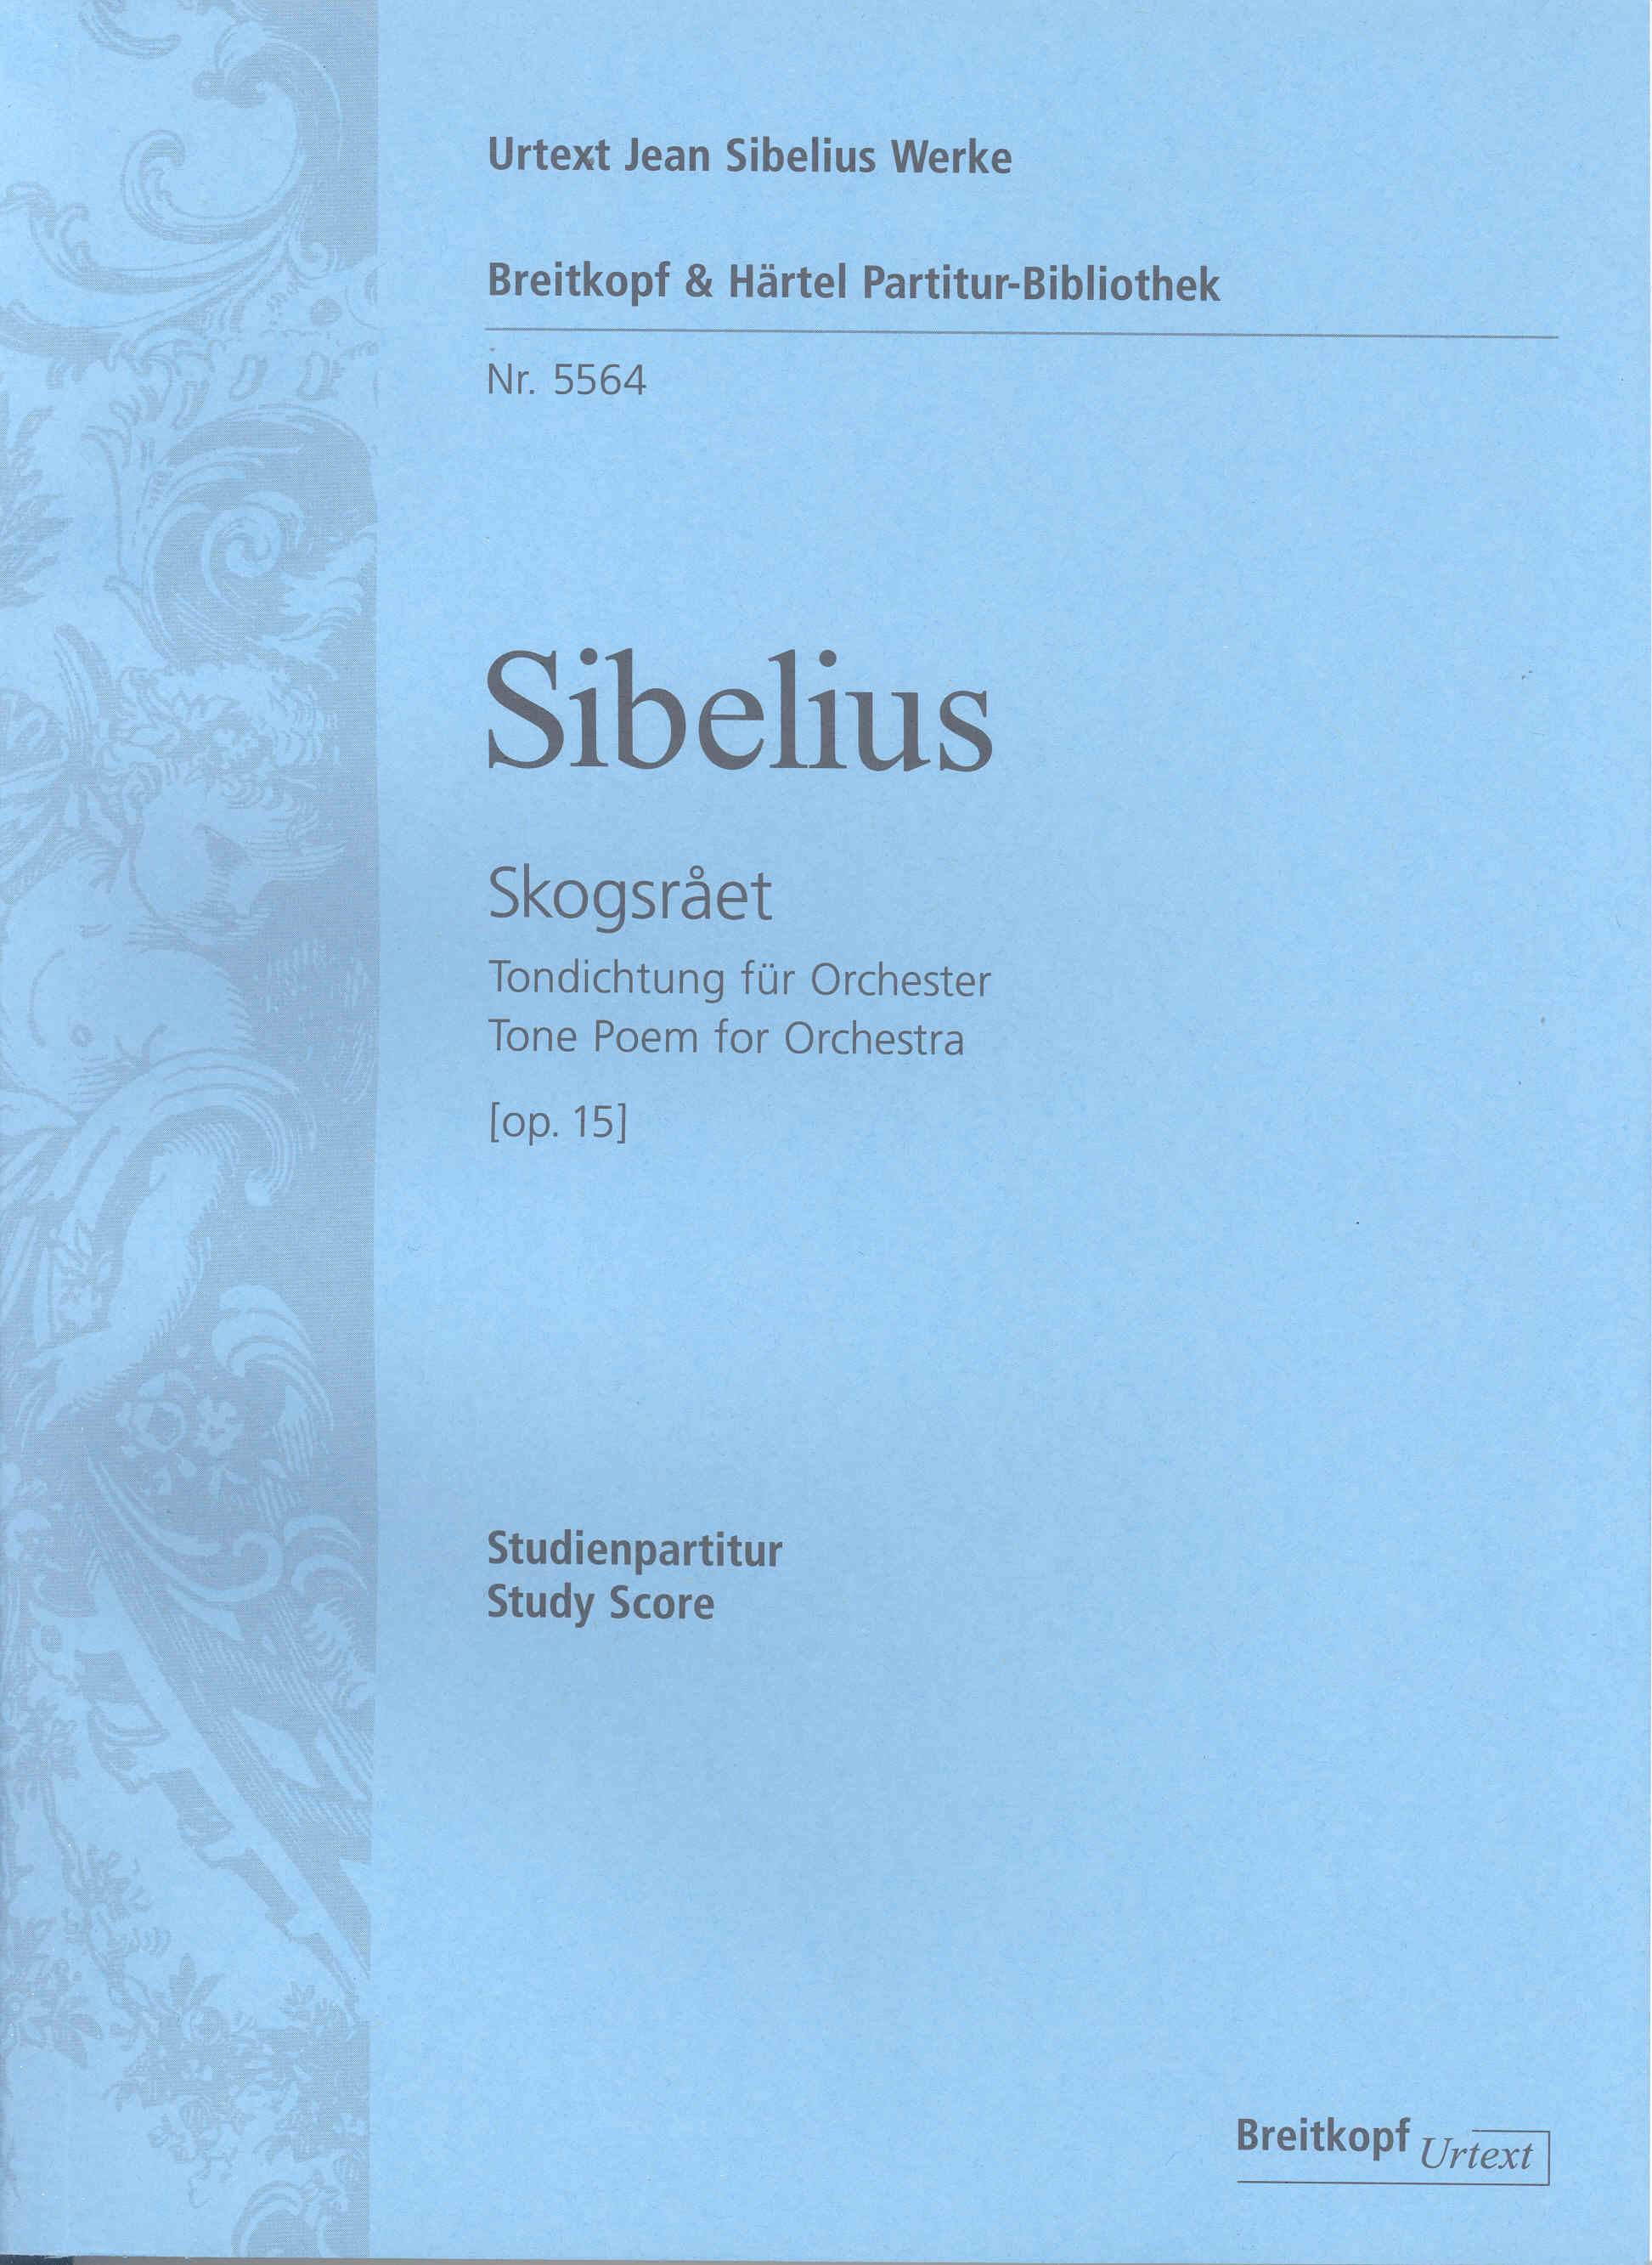 Sibelius Skogsraet Op15 Study Score Sheet Music Songbook